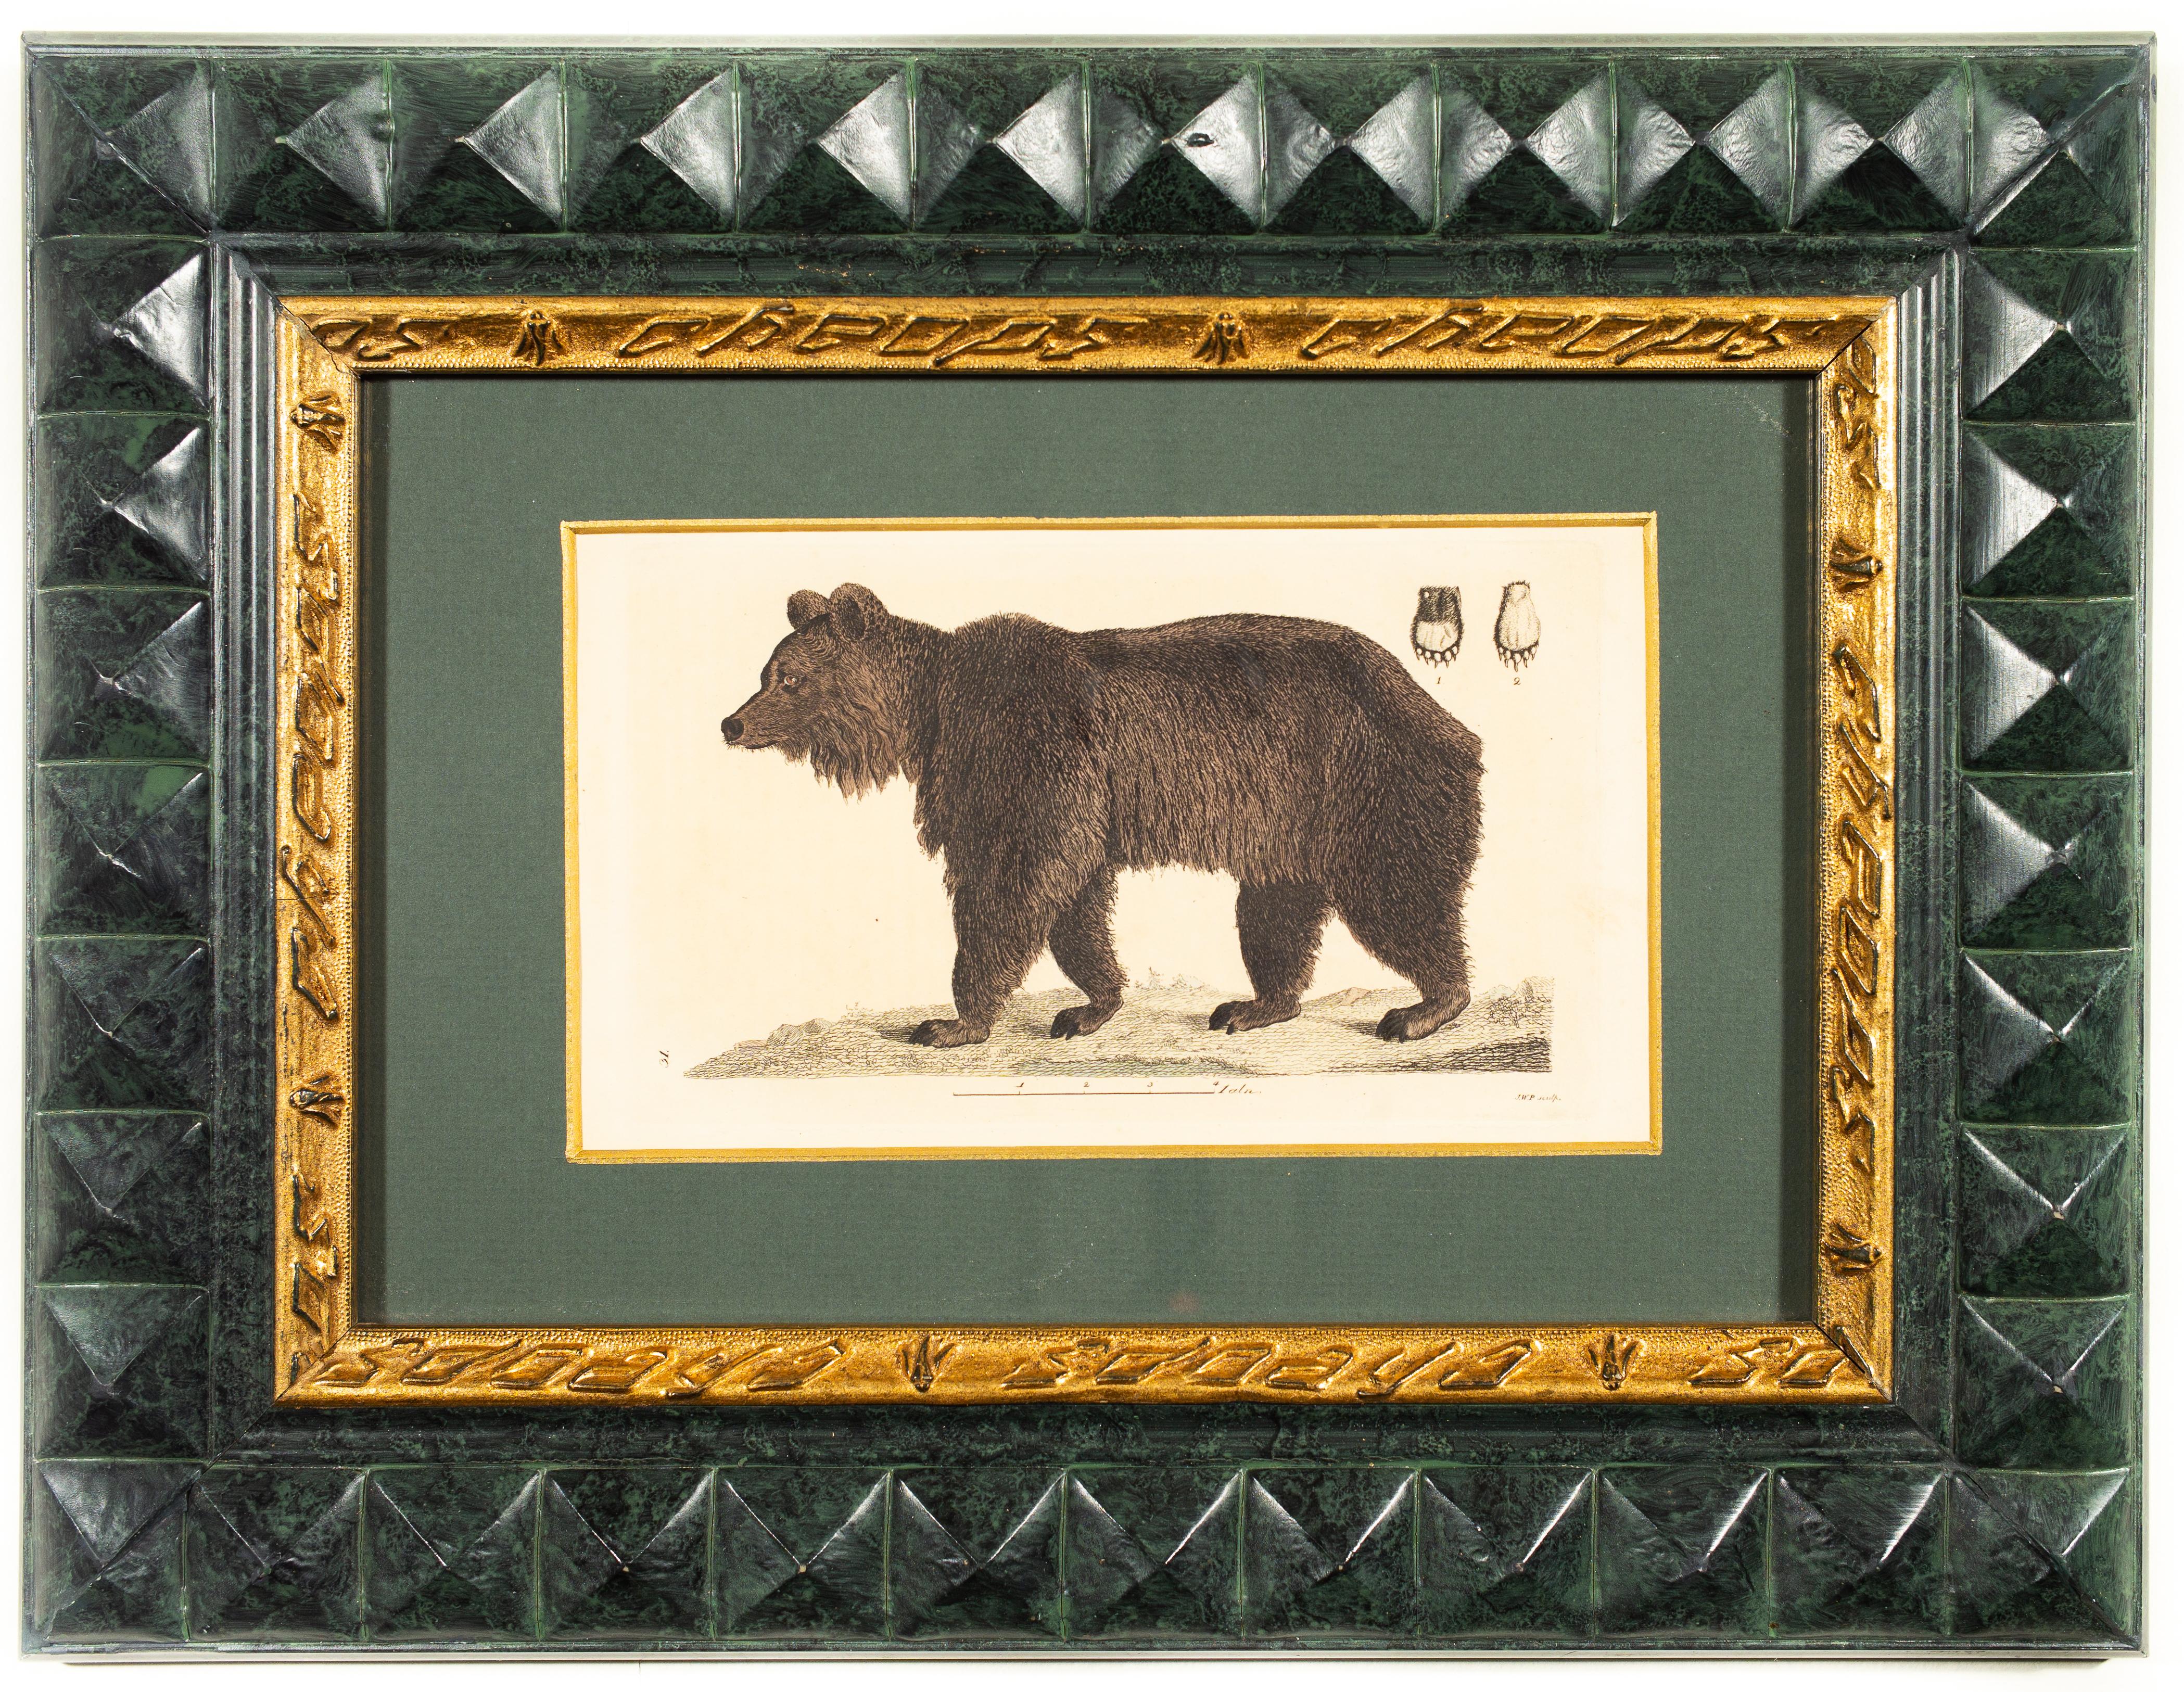 Johan Wilhelm Palmstruch (1770-1811) Suède

Titre : Un ours

impression colorée à la main 
début des années 1800 
dimensions de l'impression : 11 x 18 cm (4,33 x 7,08 pouces) environ 
cadre 11.81 x 15.74 pouces (30 x 40 cm)

Johan Wilhelm Palmstruch